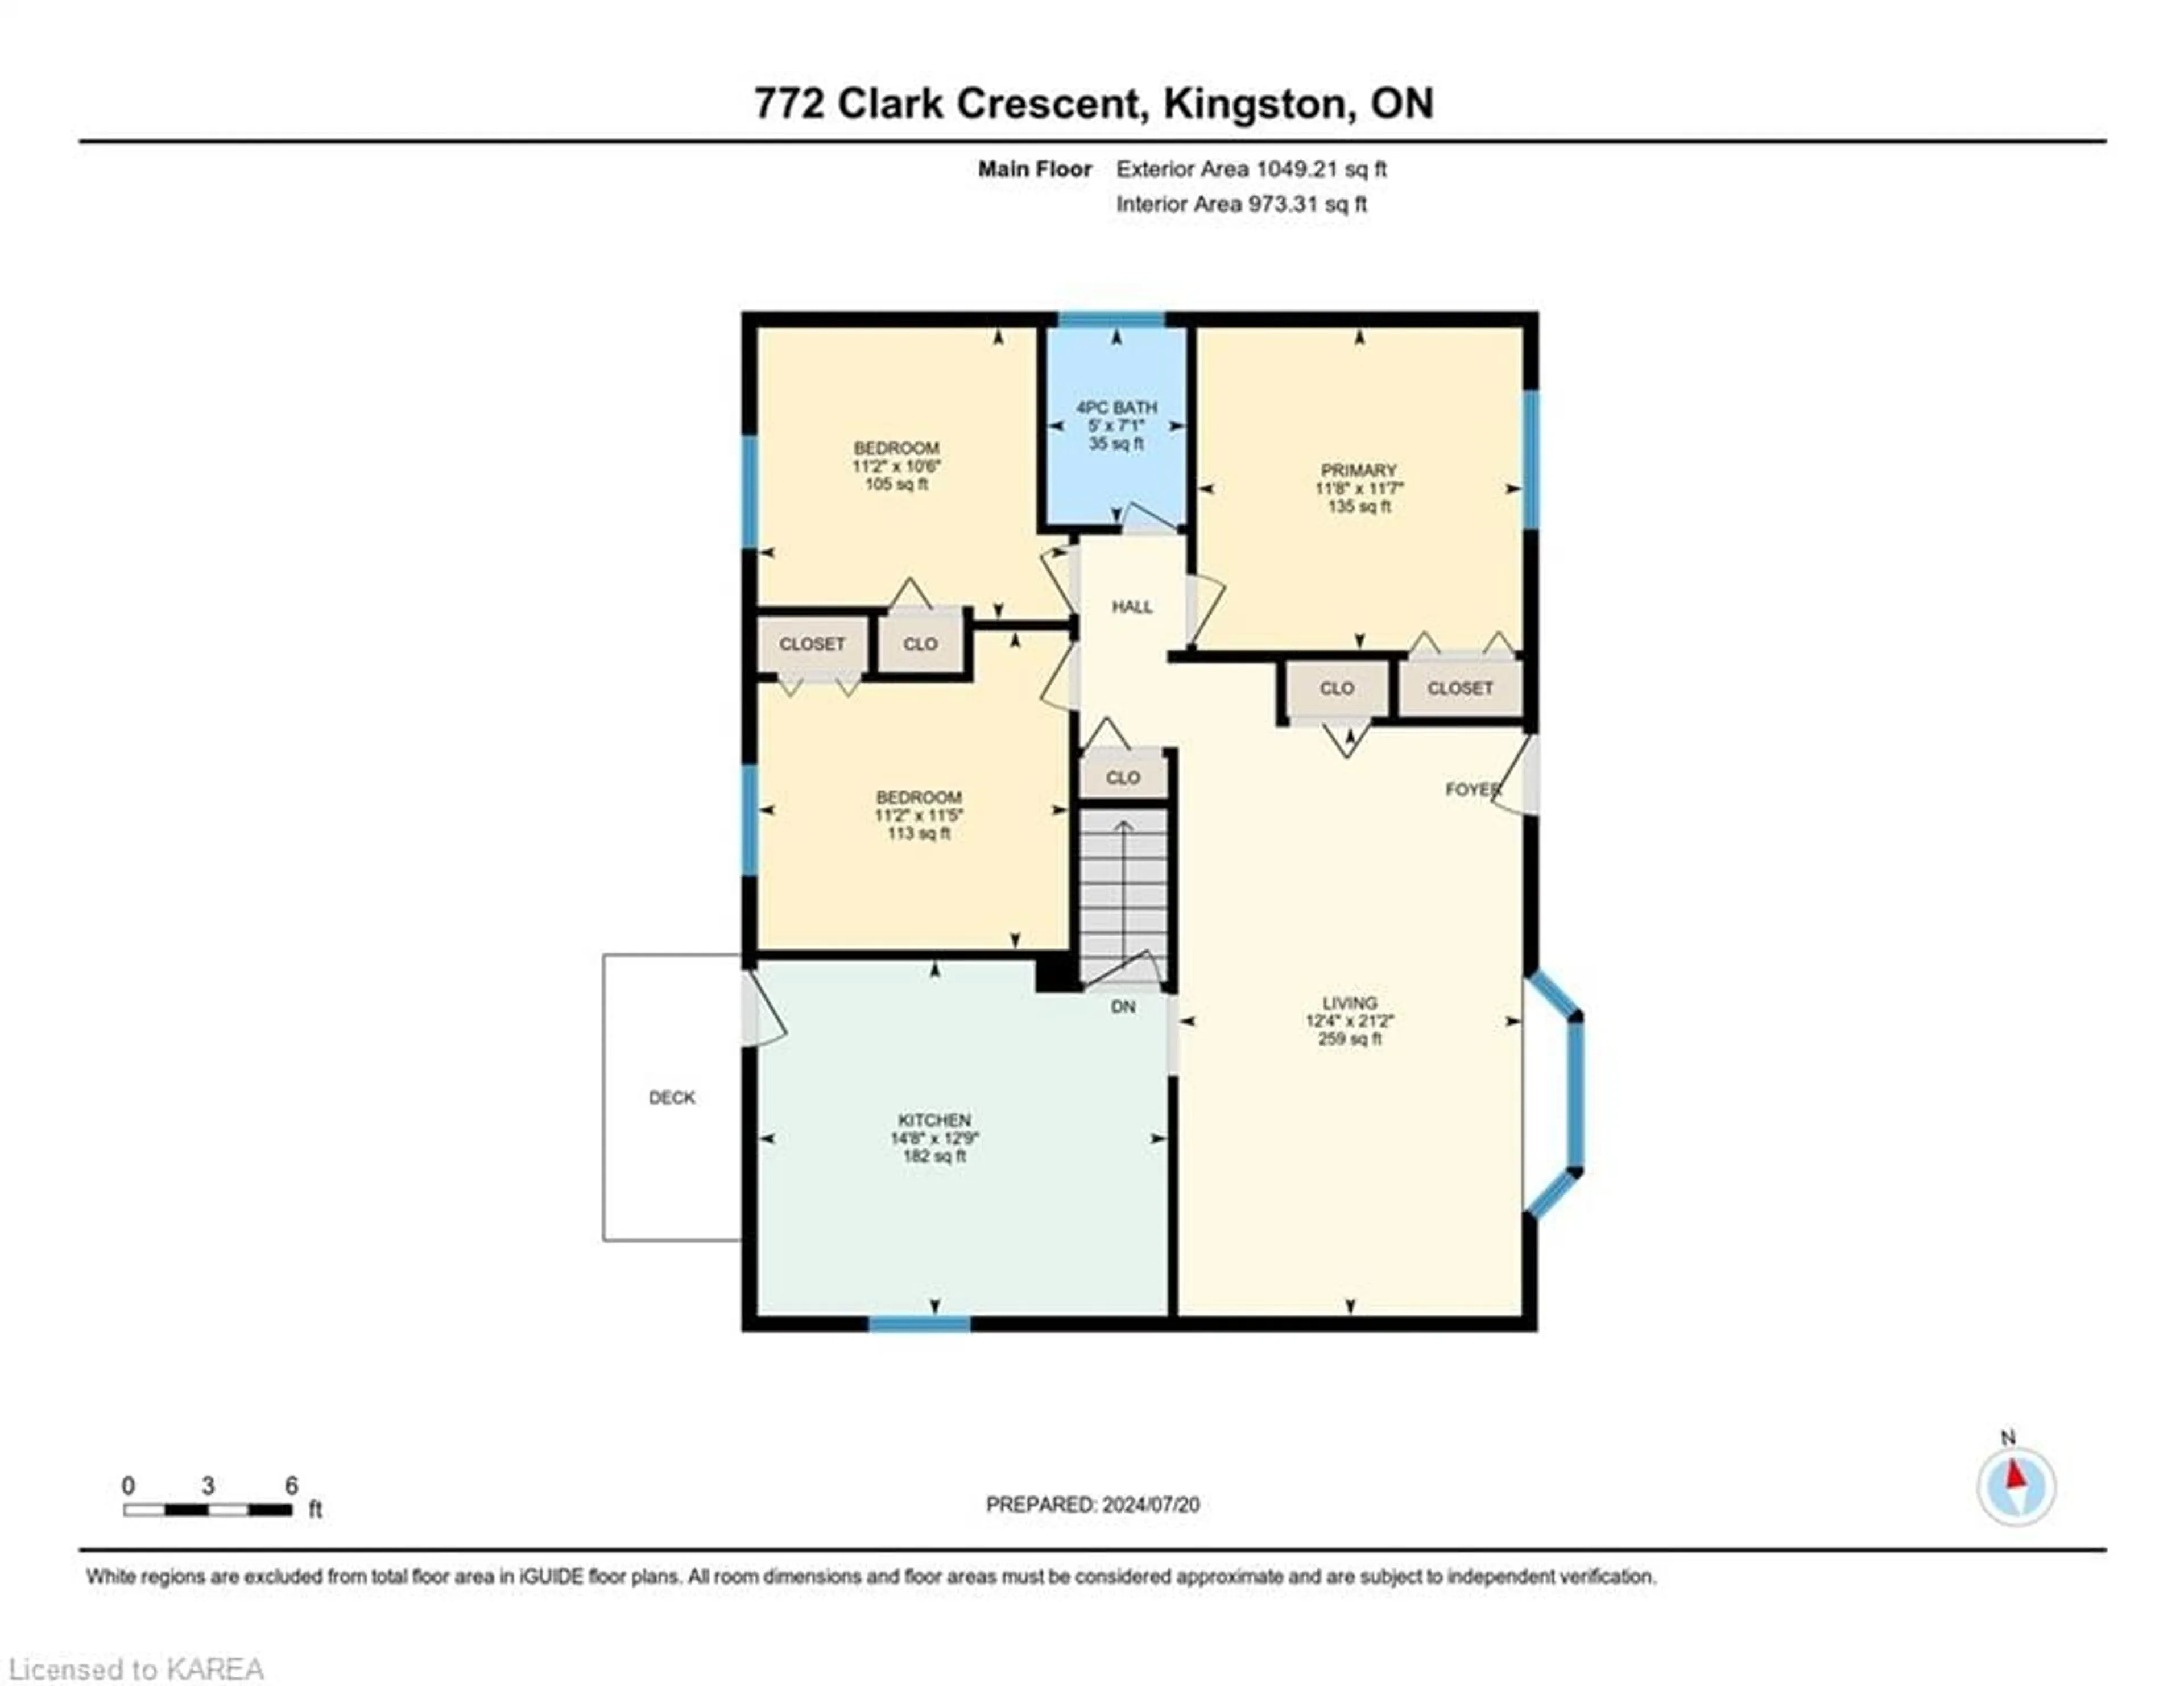 Floor plan for 772 Clark Cres, Kingston Ontario K7M 6J4